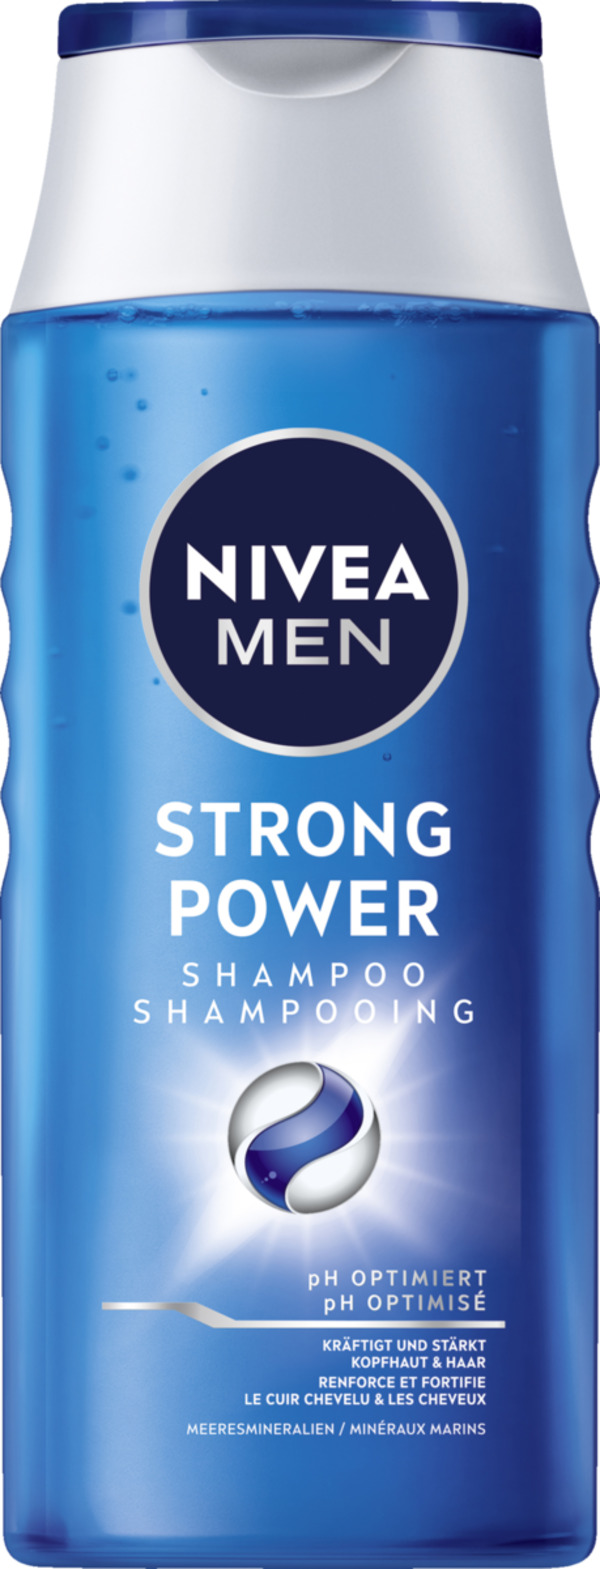 Bild 1 von NIVEA MEN Strong Power Shampoo